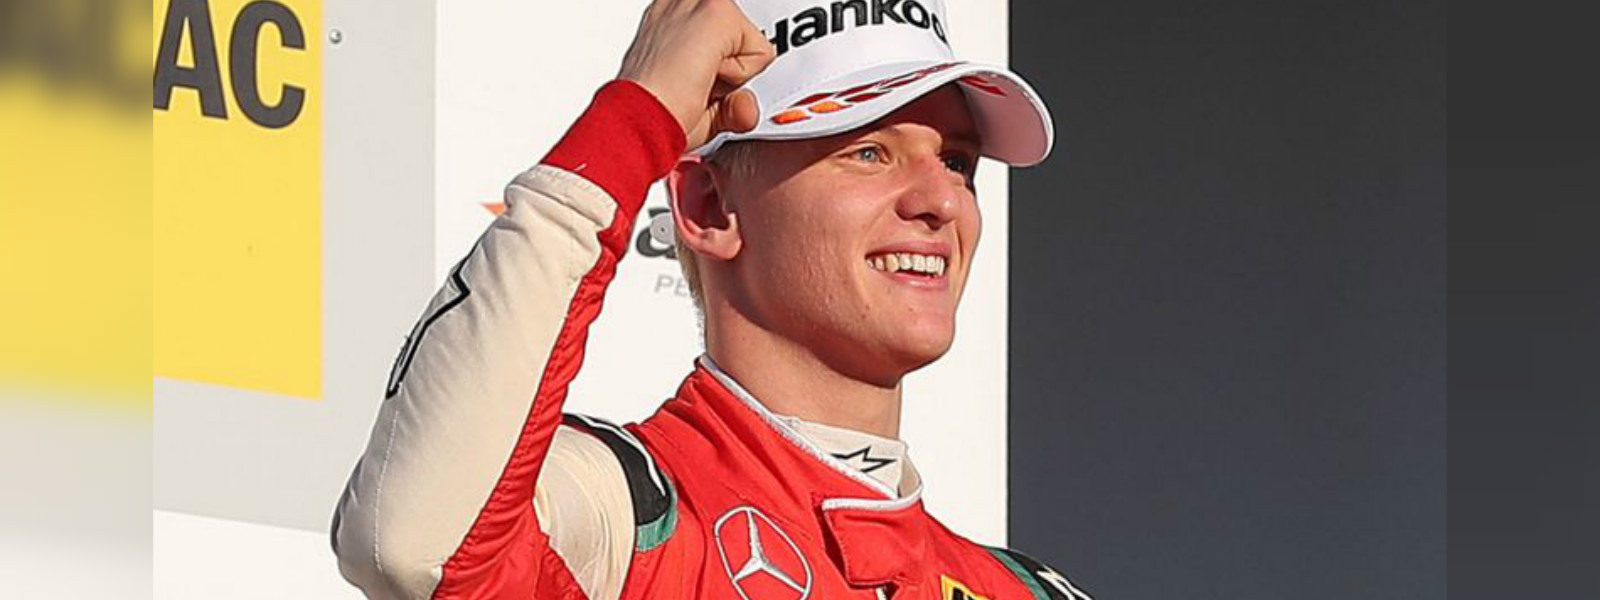 Mick Schumacher wins Formula 3 European title